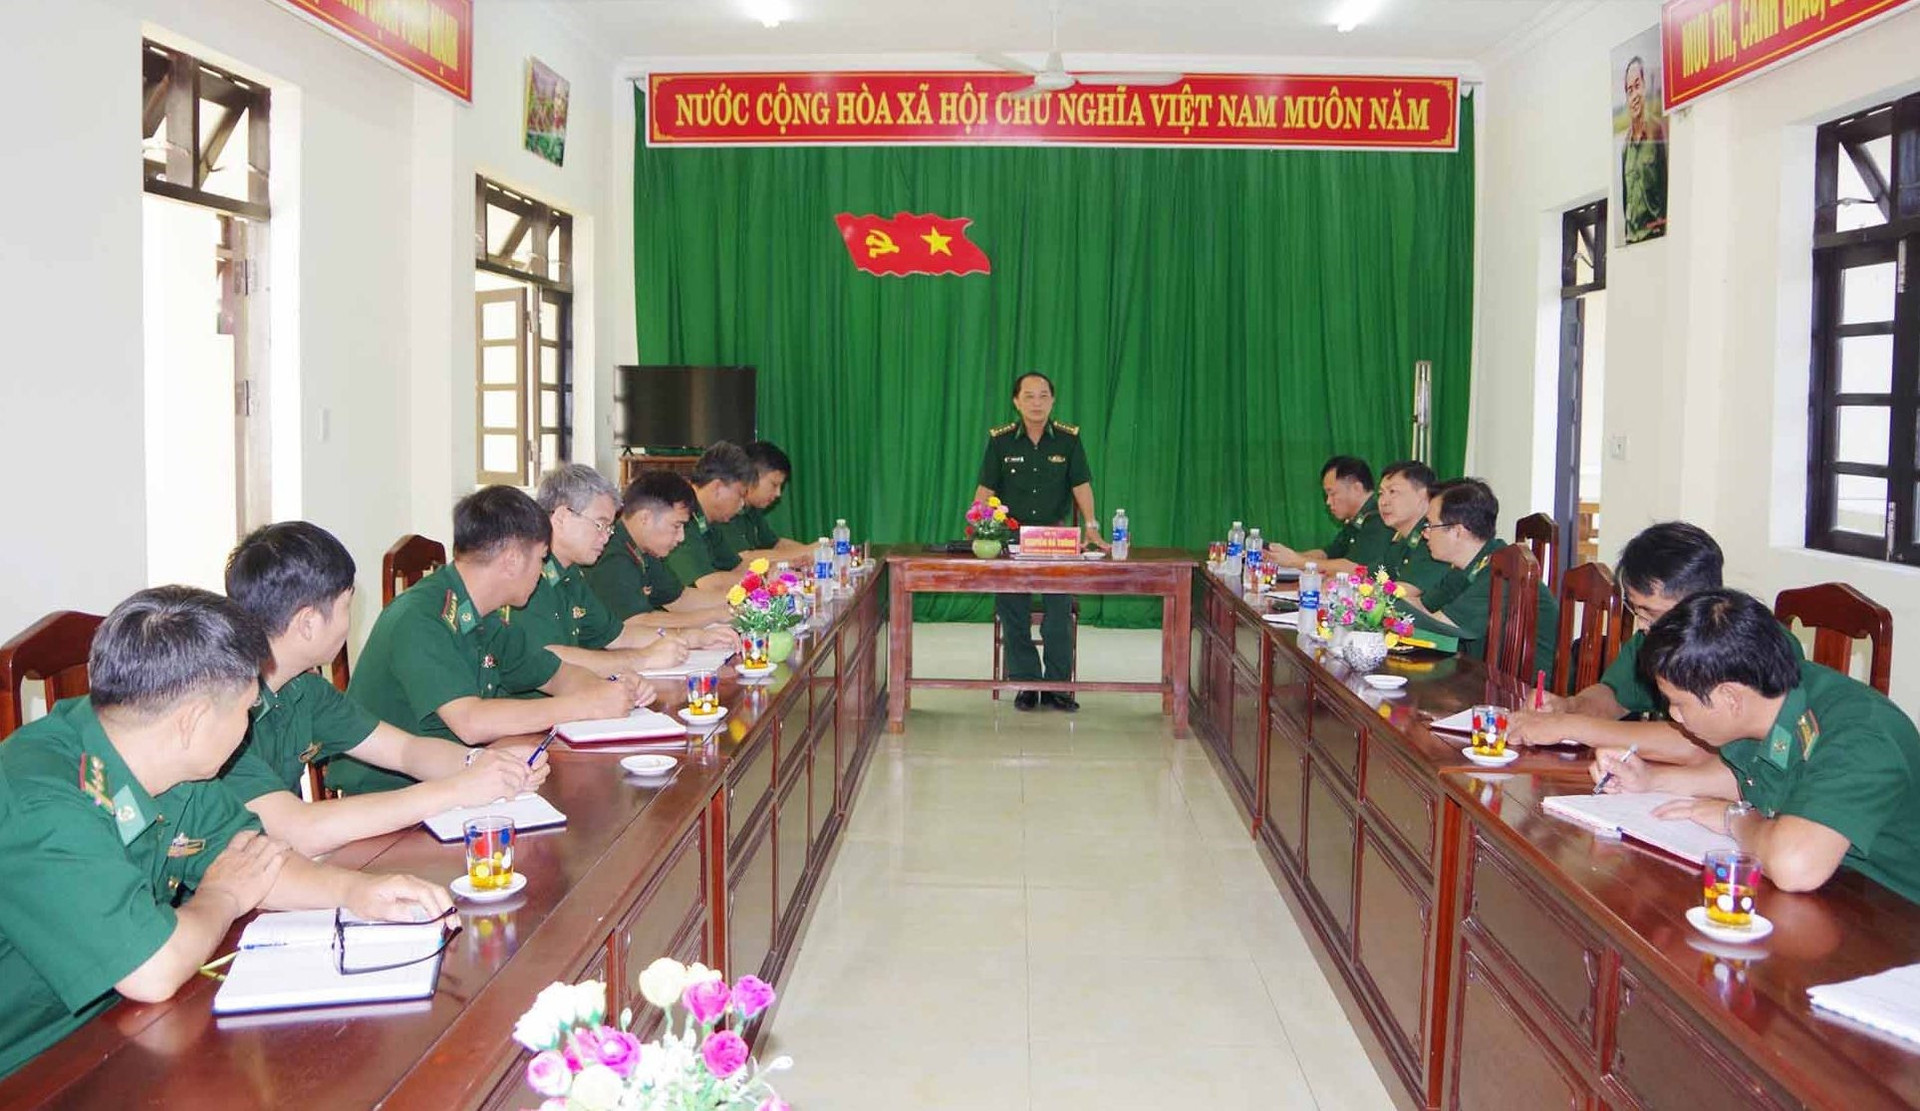 Đại tá Nguyễn Bá Thông – Chỉ huy trưởng BĐBP kết luận kiểm tra tại Đồn Biên phòng Đắc Pring. Ảnh: HỒNG ANH